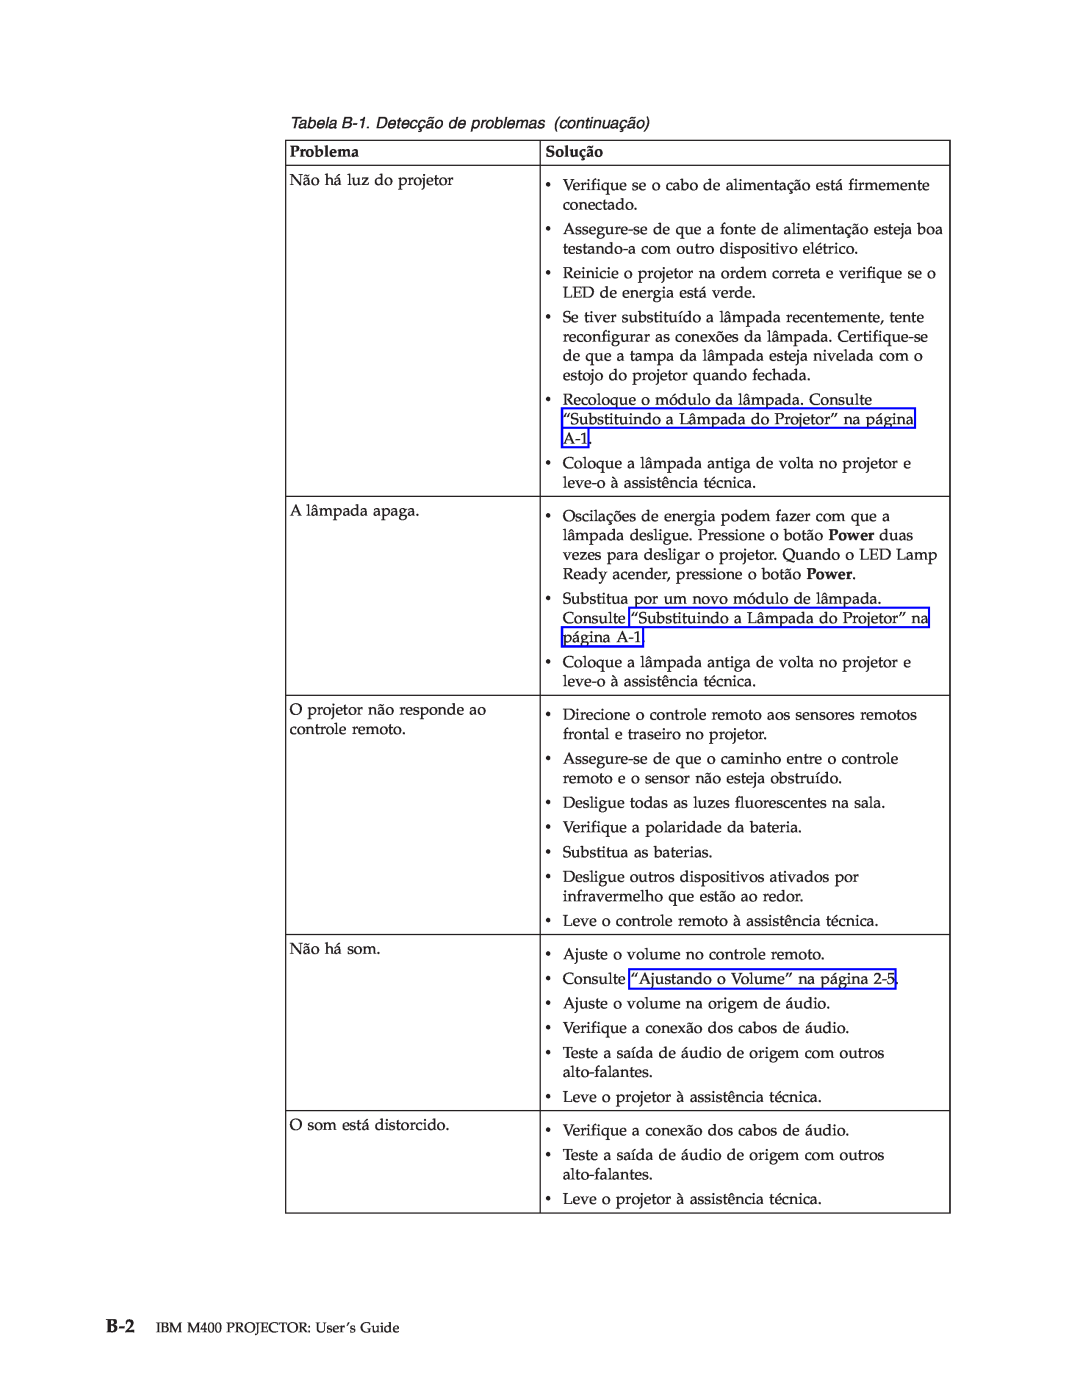 IBM manual Tabela B-1. Detecção de problemas continuação, B-2 IBM M400 PROJECTOR User’s Guide 